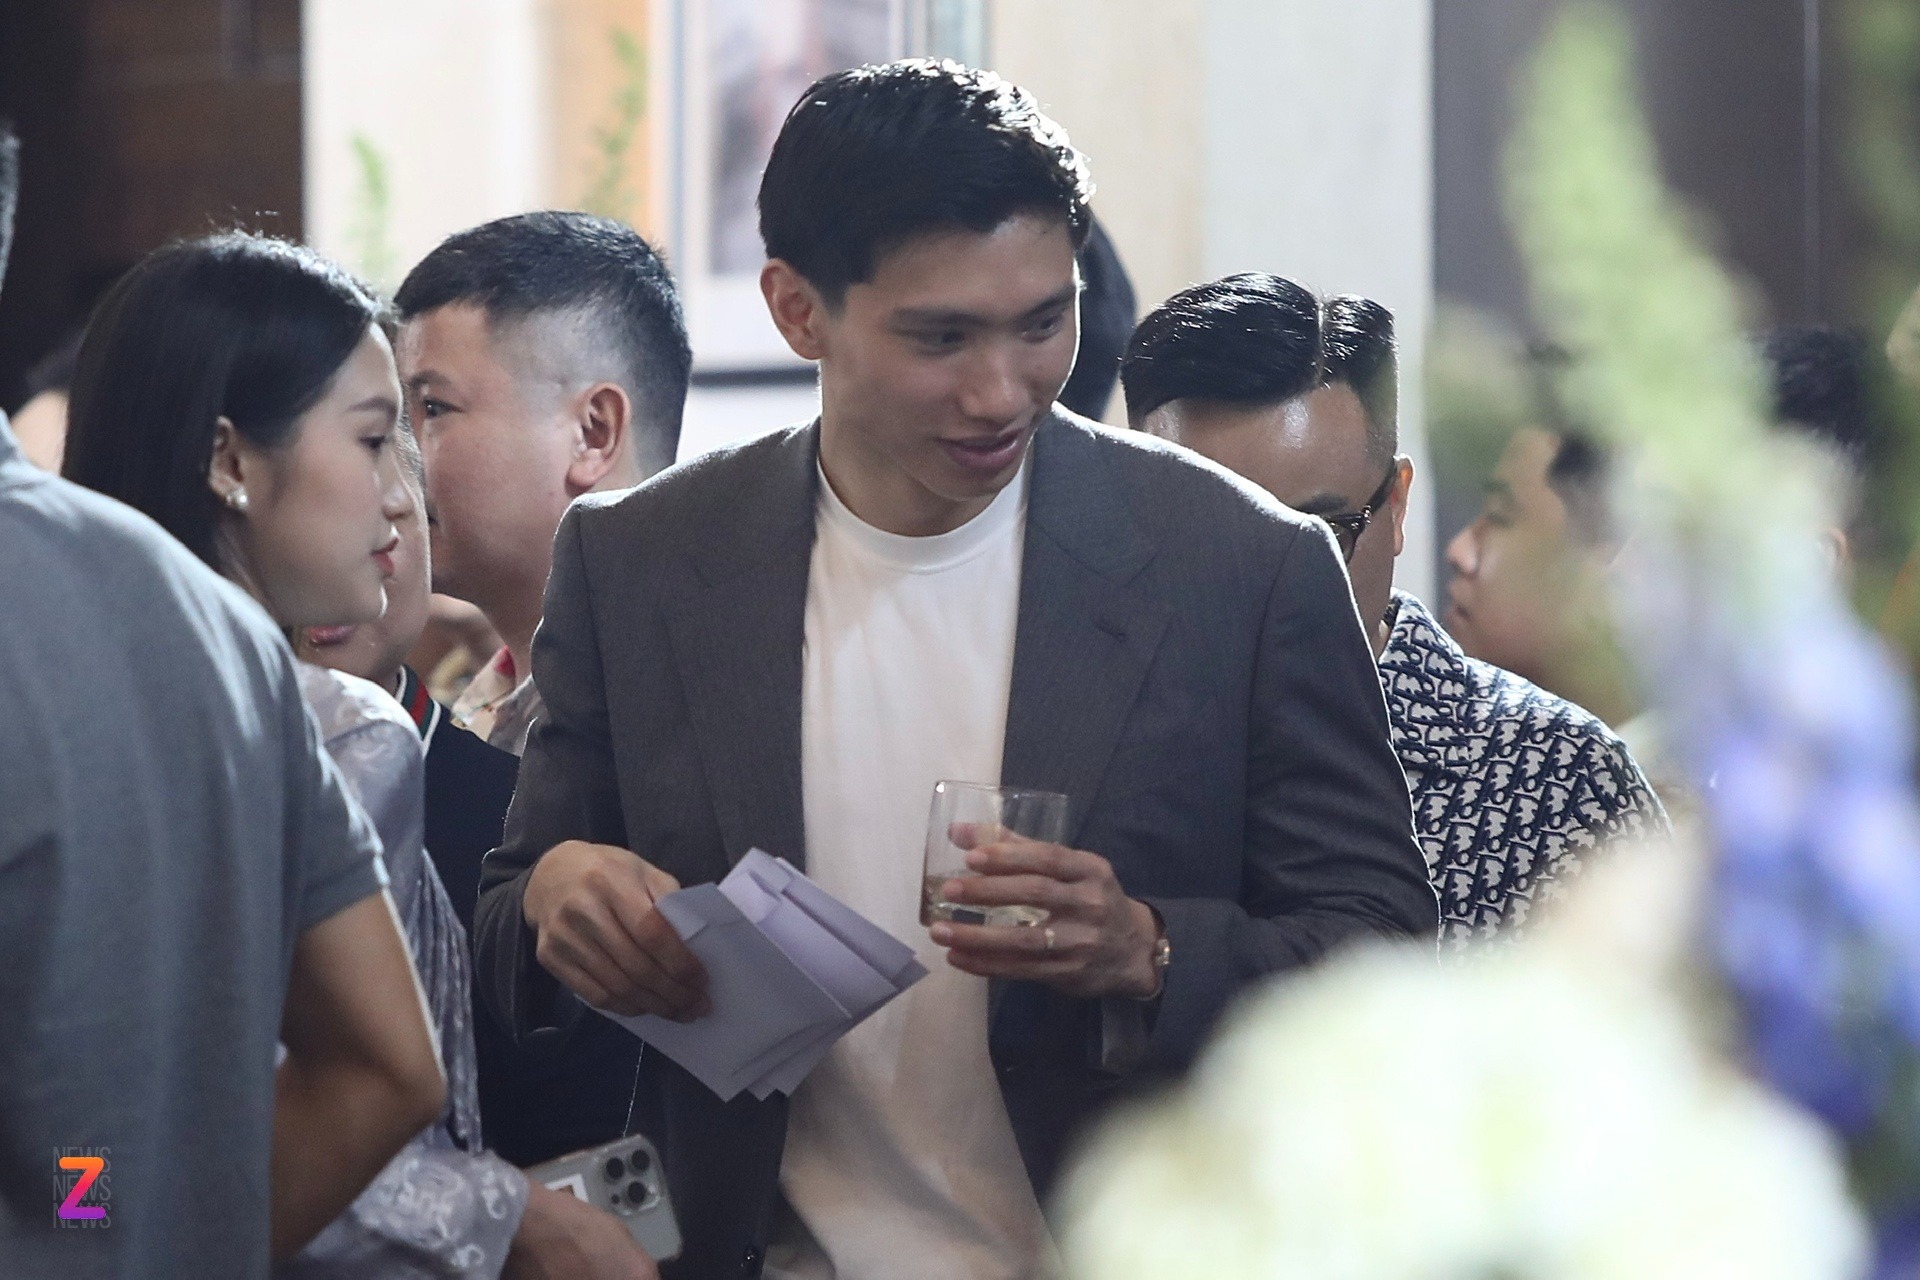 Hôm 28/3, Đoàn Văn Hậu xuất hiện trong tiệc cưới của Quang Hải tại Đông Anh, Hà Nội. Hôm nay, anh tiếp tục có mặt để chung vui với tiền vệ đàn anh.